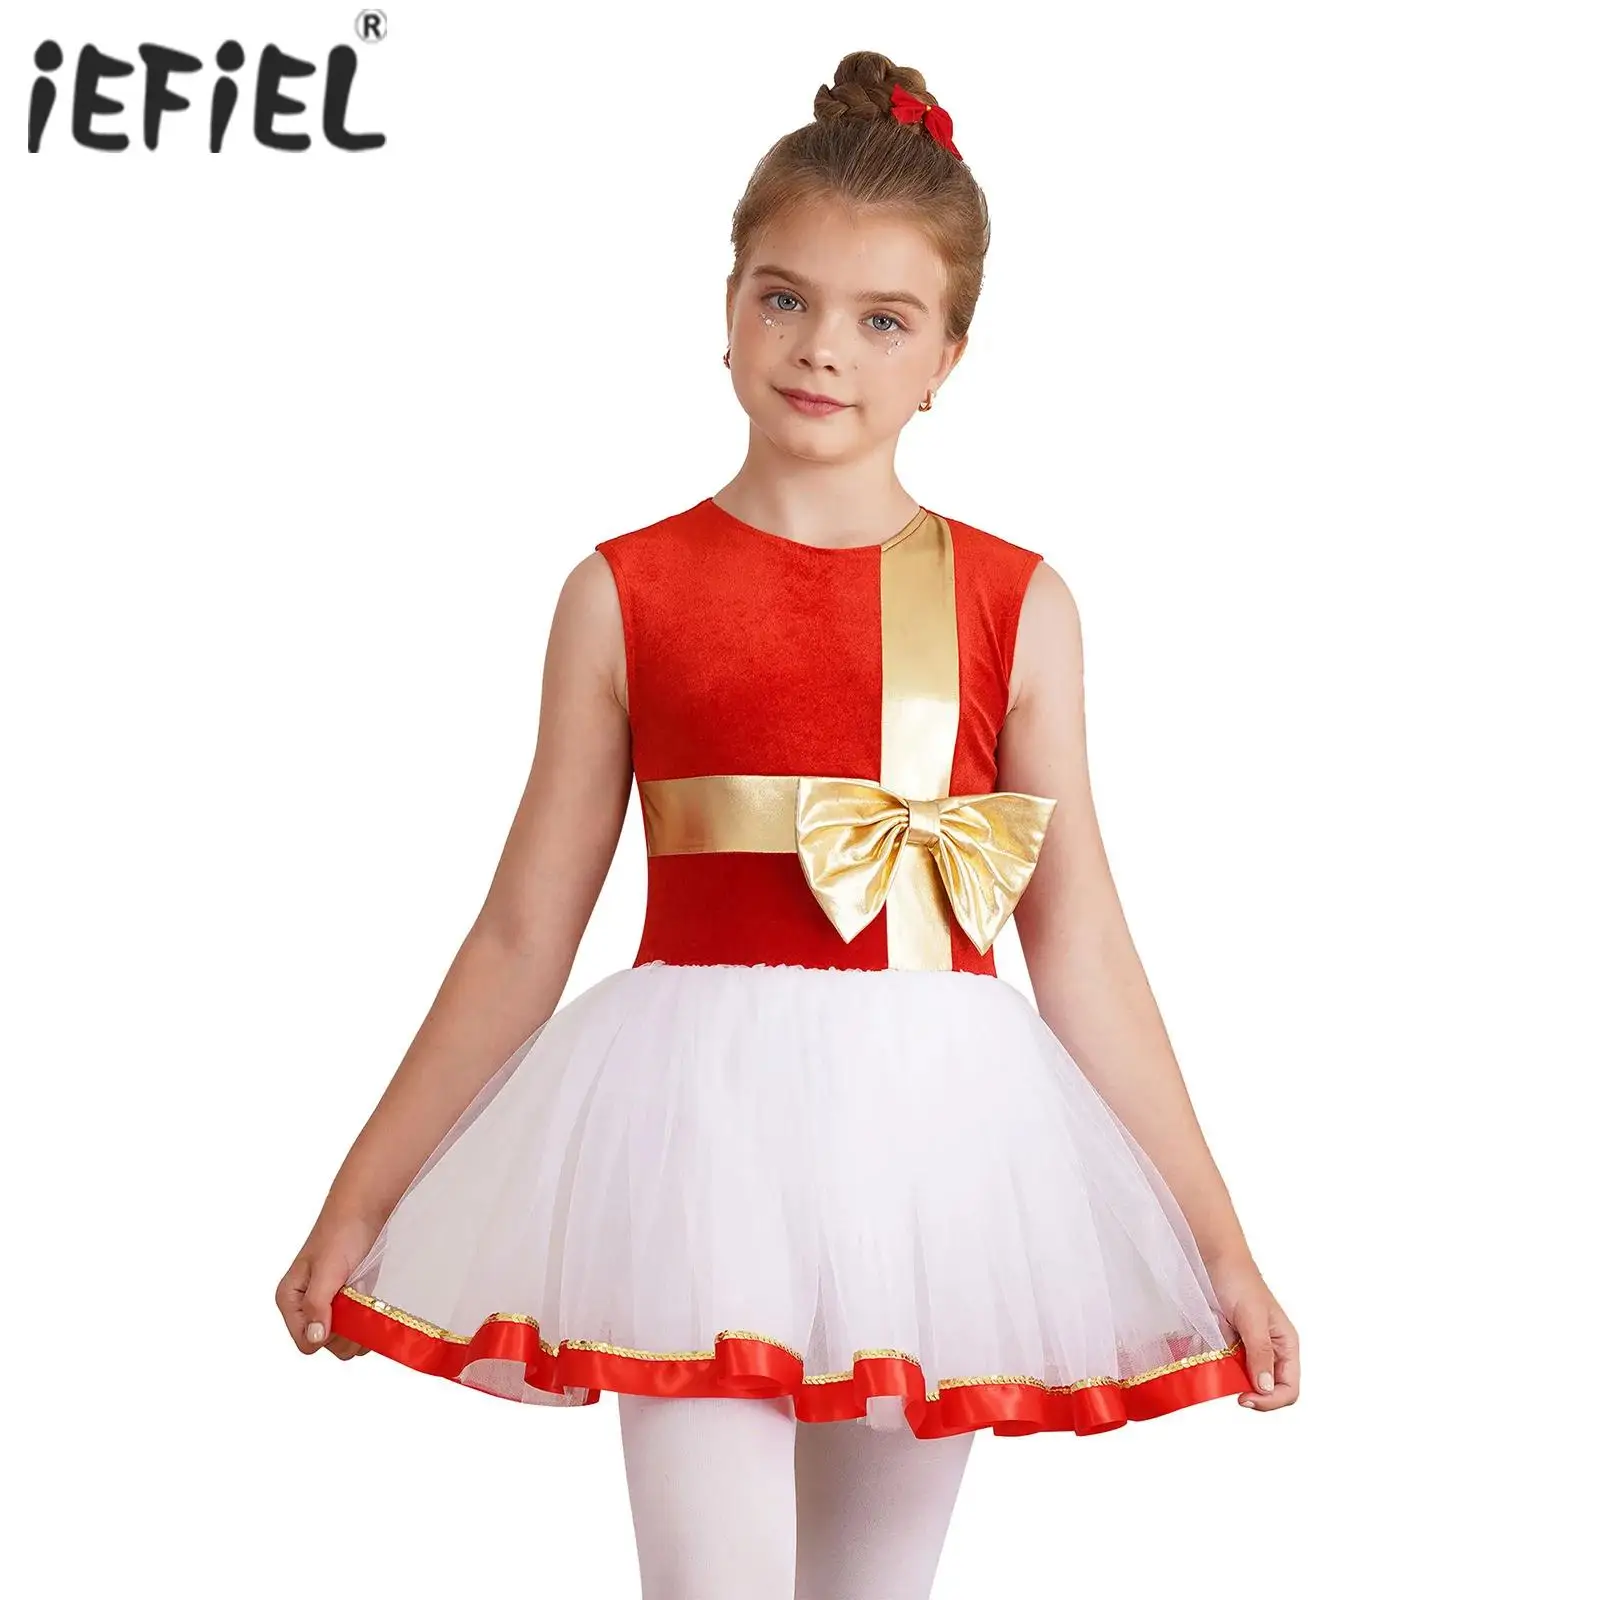 

Детский Рождественский танцевальный костюм эльф для девочек, блестящий женский костюм для нового года, для фигурок, катания на коньках, балетные трико